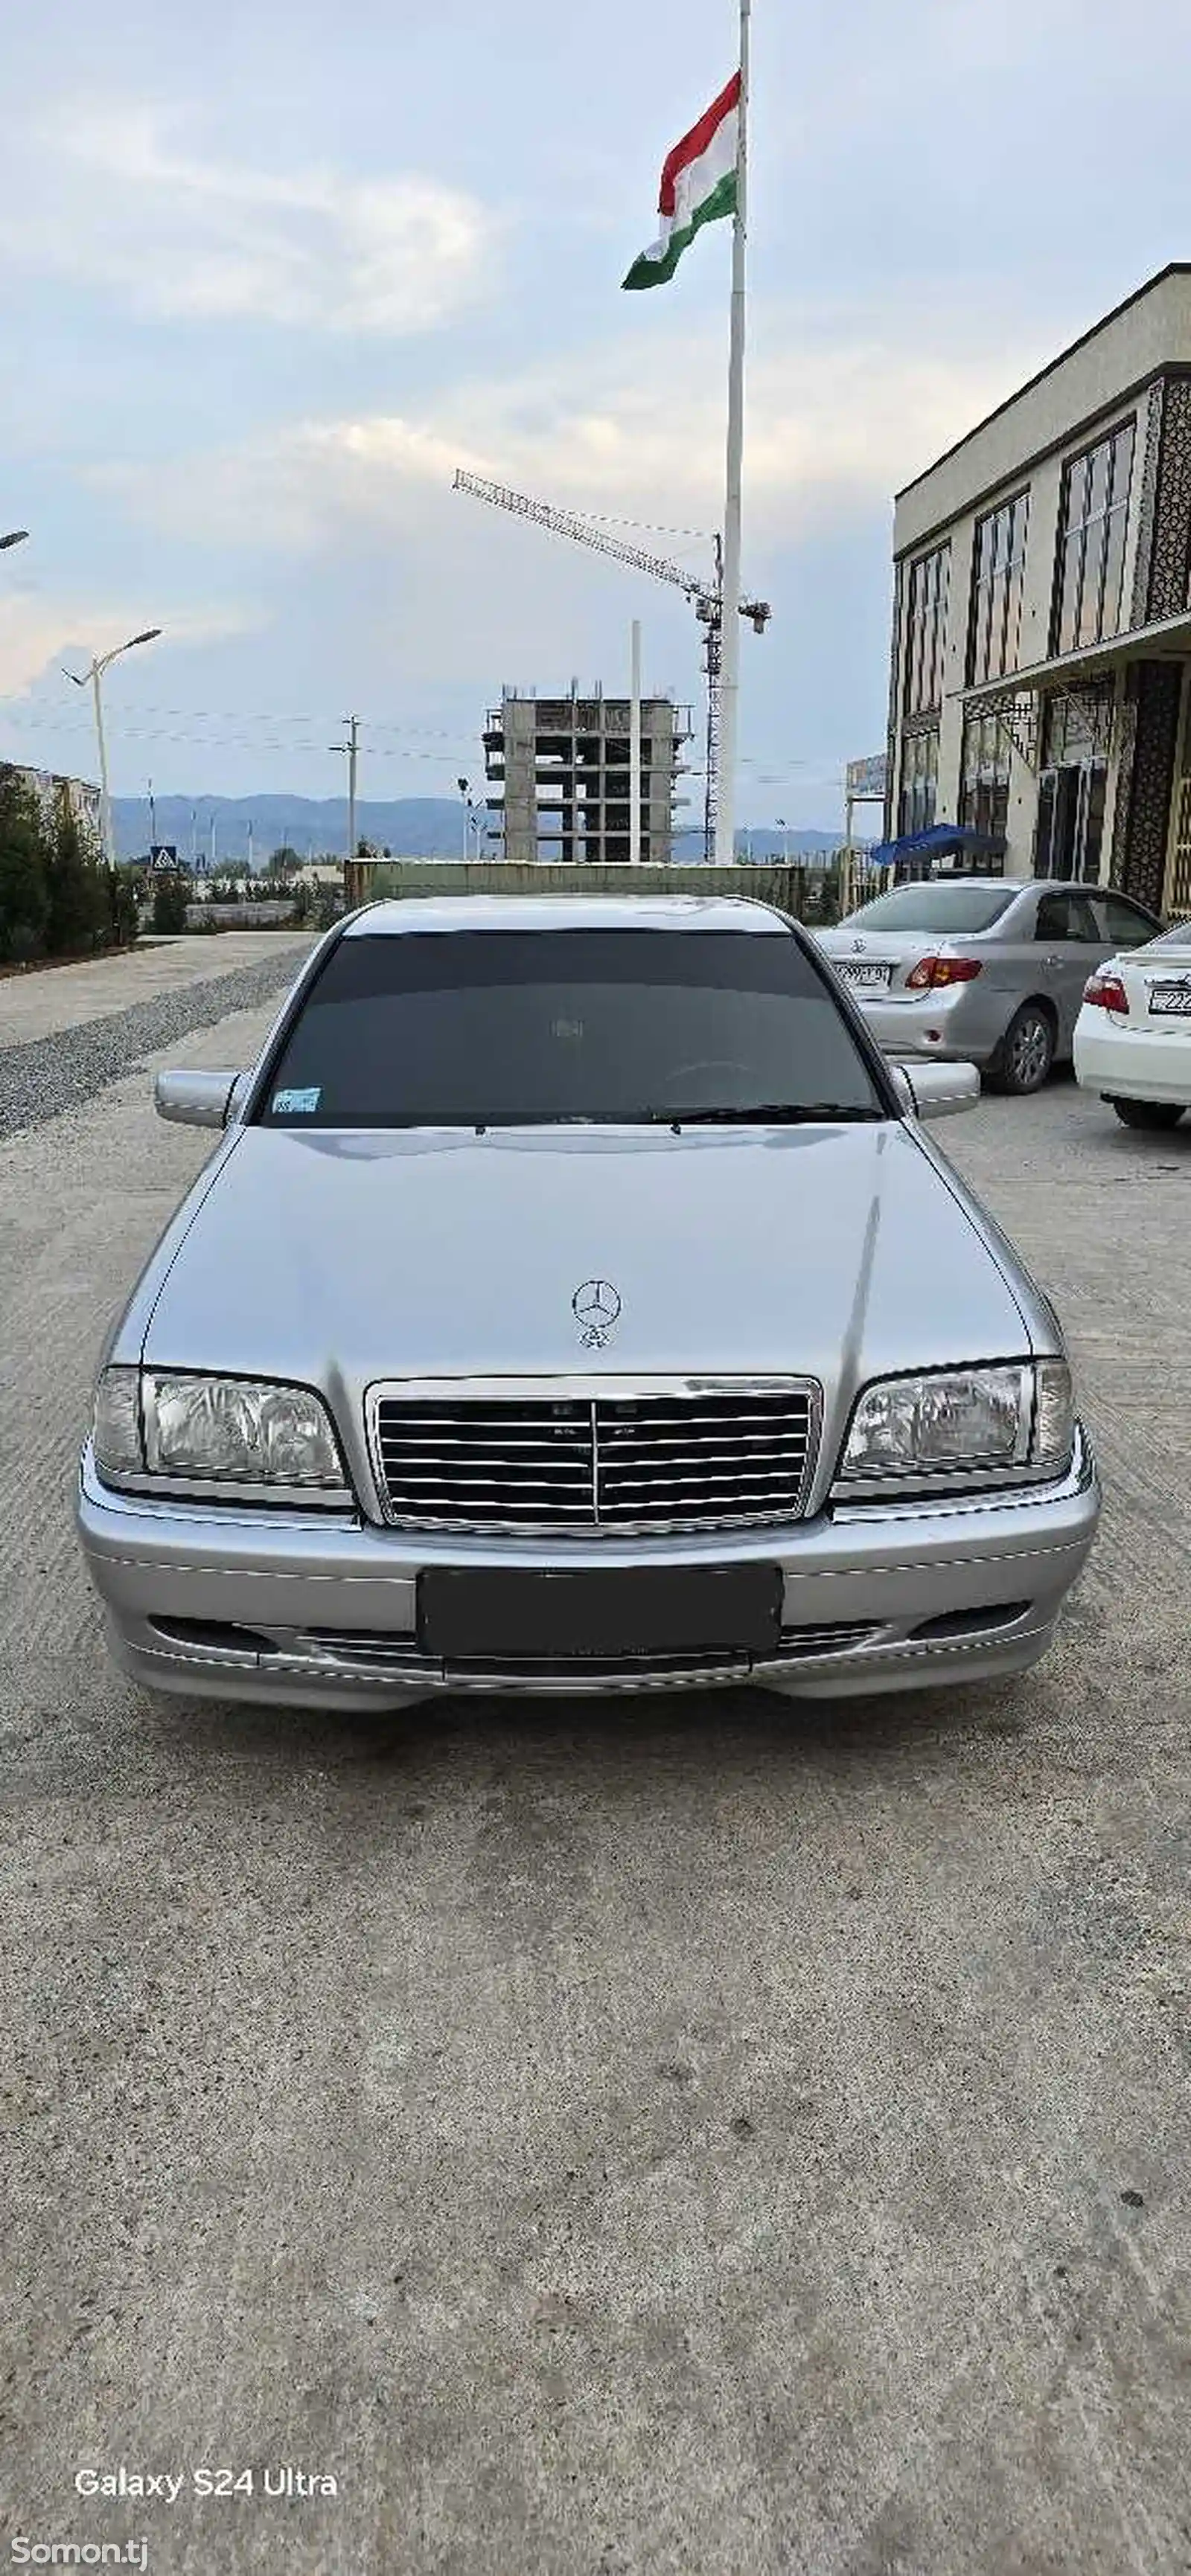 Mercedes-Benz C class, 2000-2